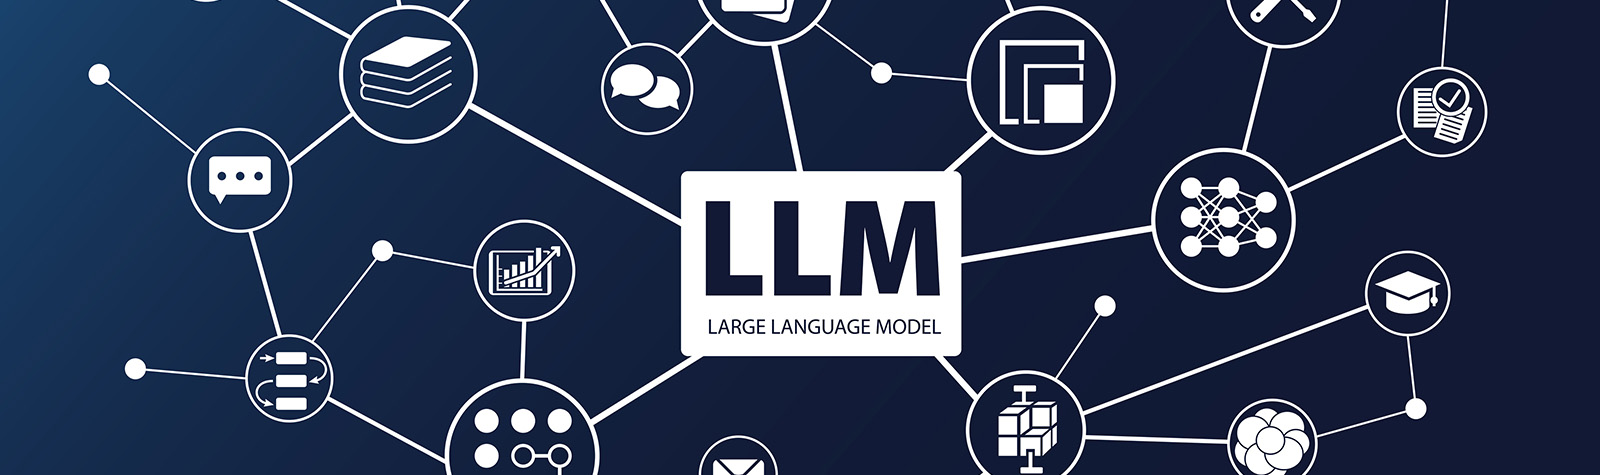 LLM’s: krachtige taalmodellen met potentiële gevaren